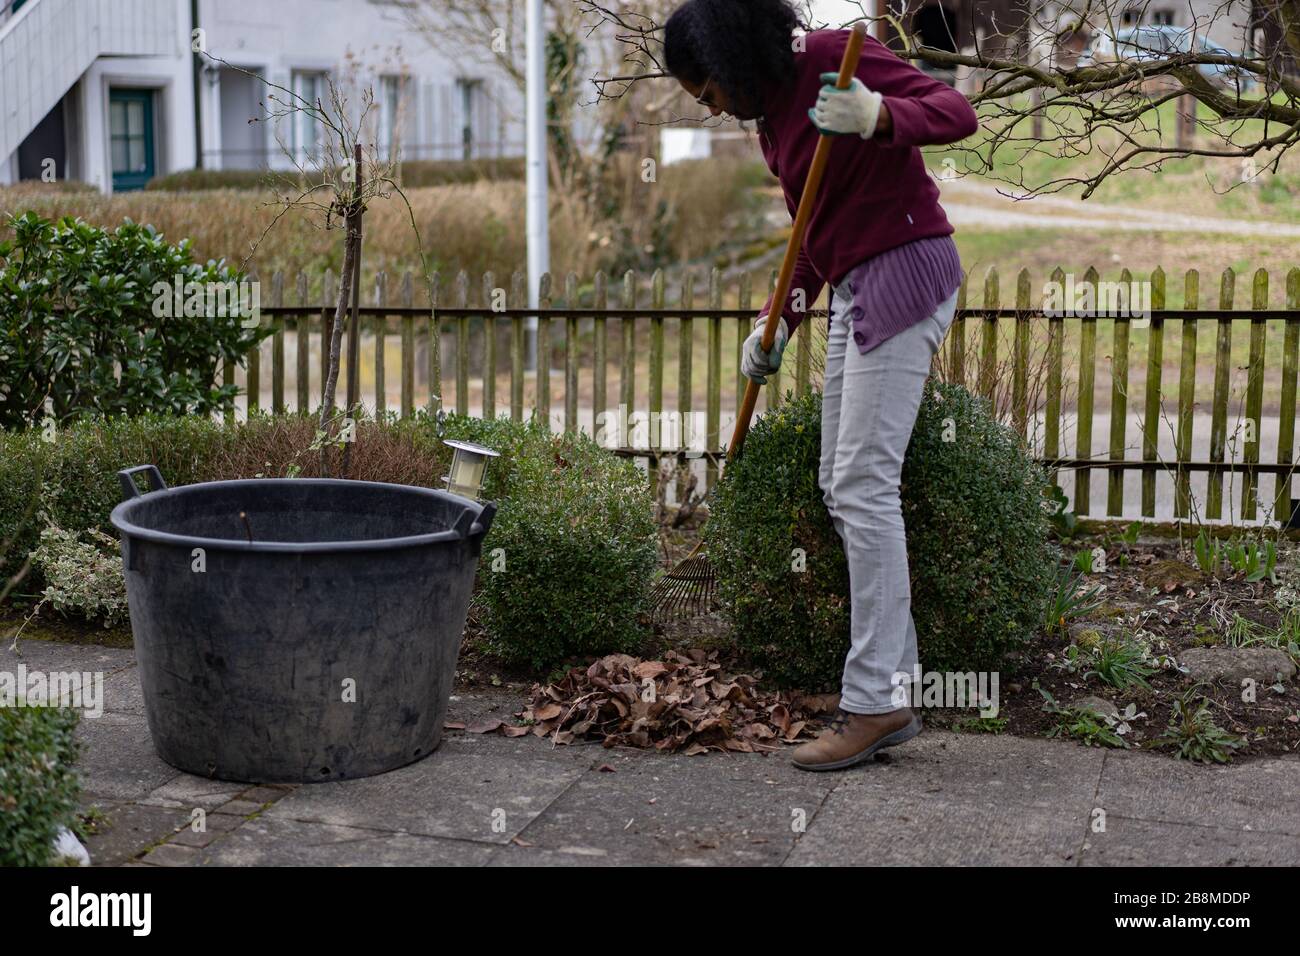 Giovane donna è rastrellare foglie con rastrello giardino, pulizia sentiero e aiuole in primavera in giardino. Ritratto di donna giardinaggio. Foto Stock